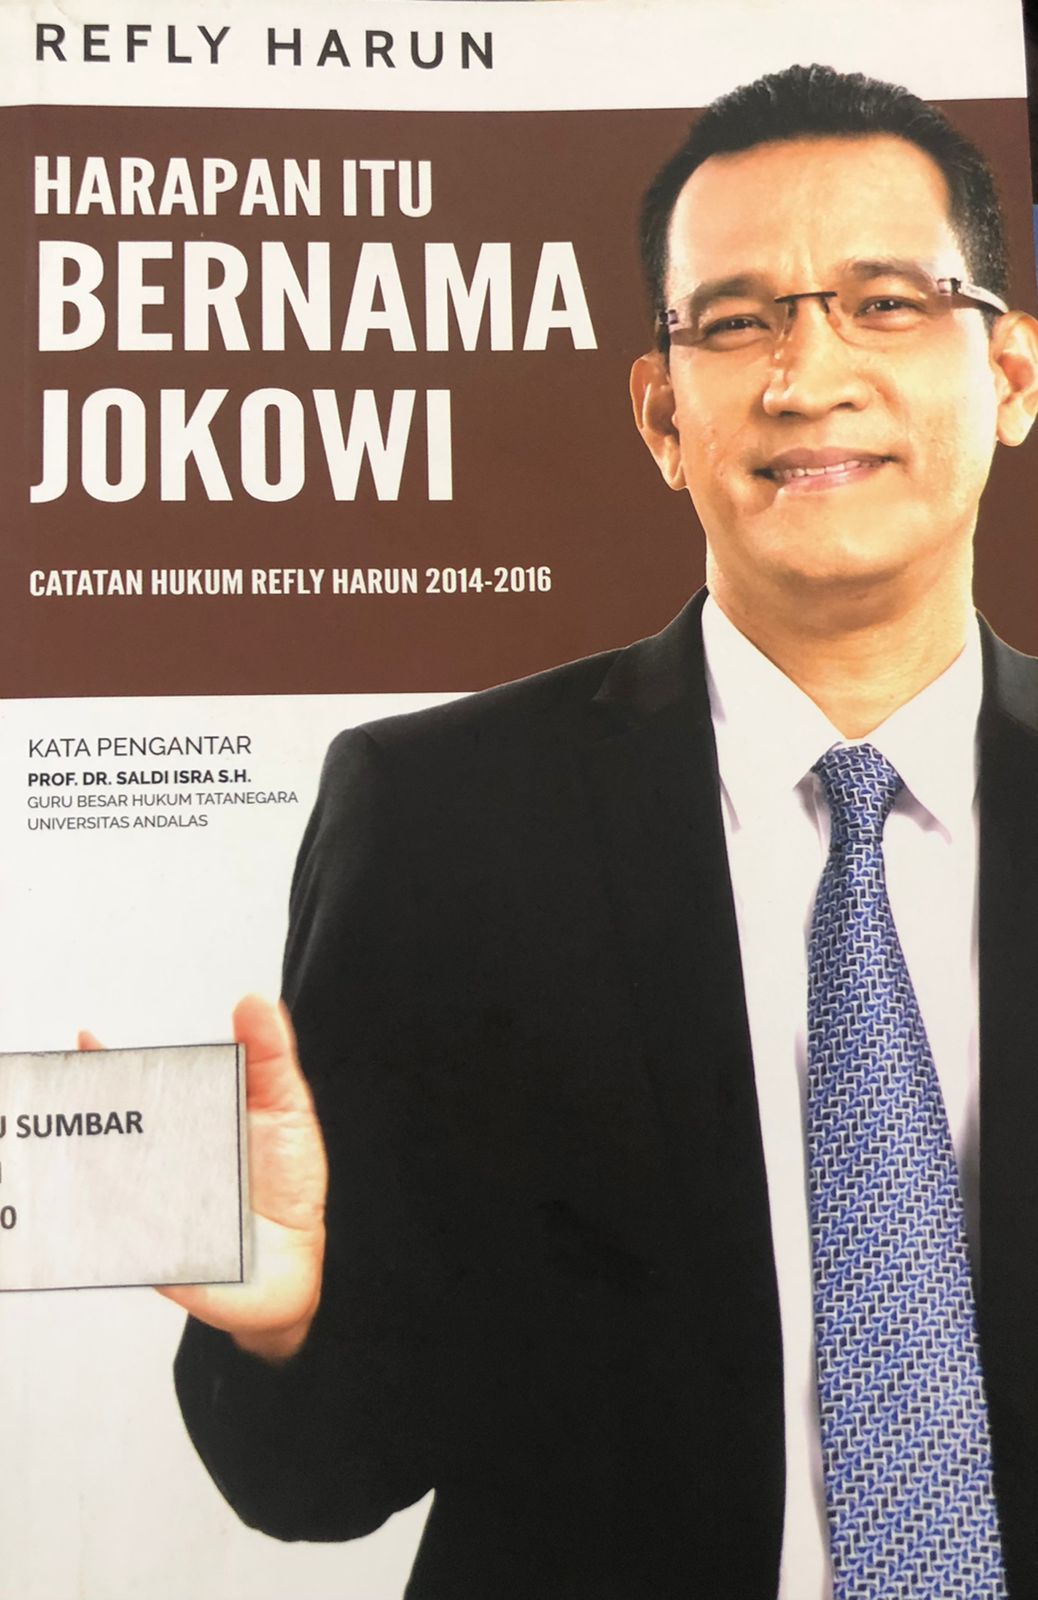 Harapan Itu Bernama Jokowi